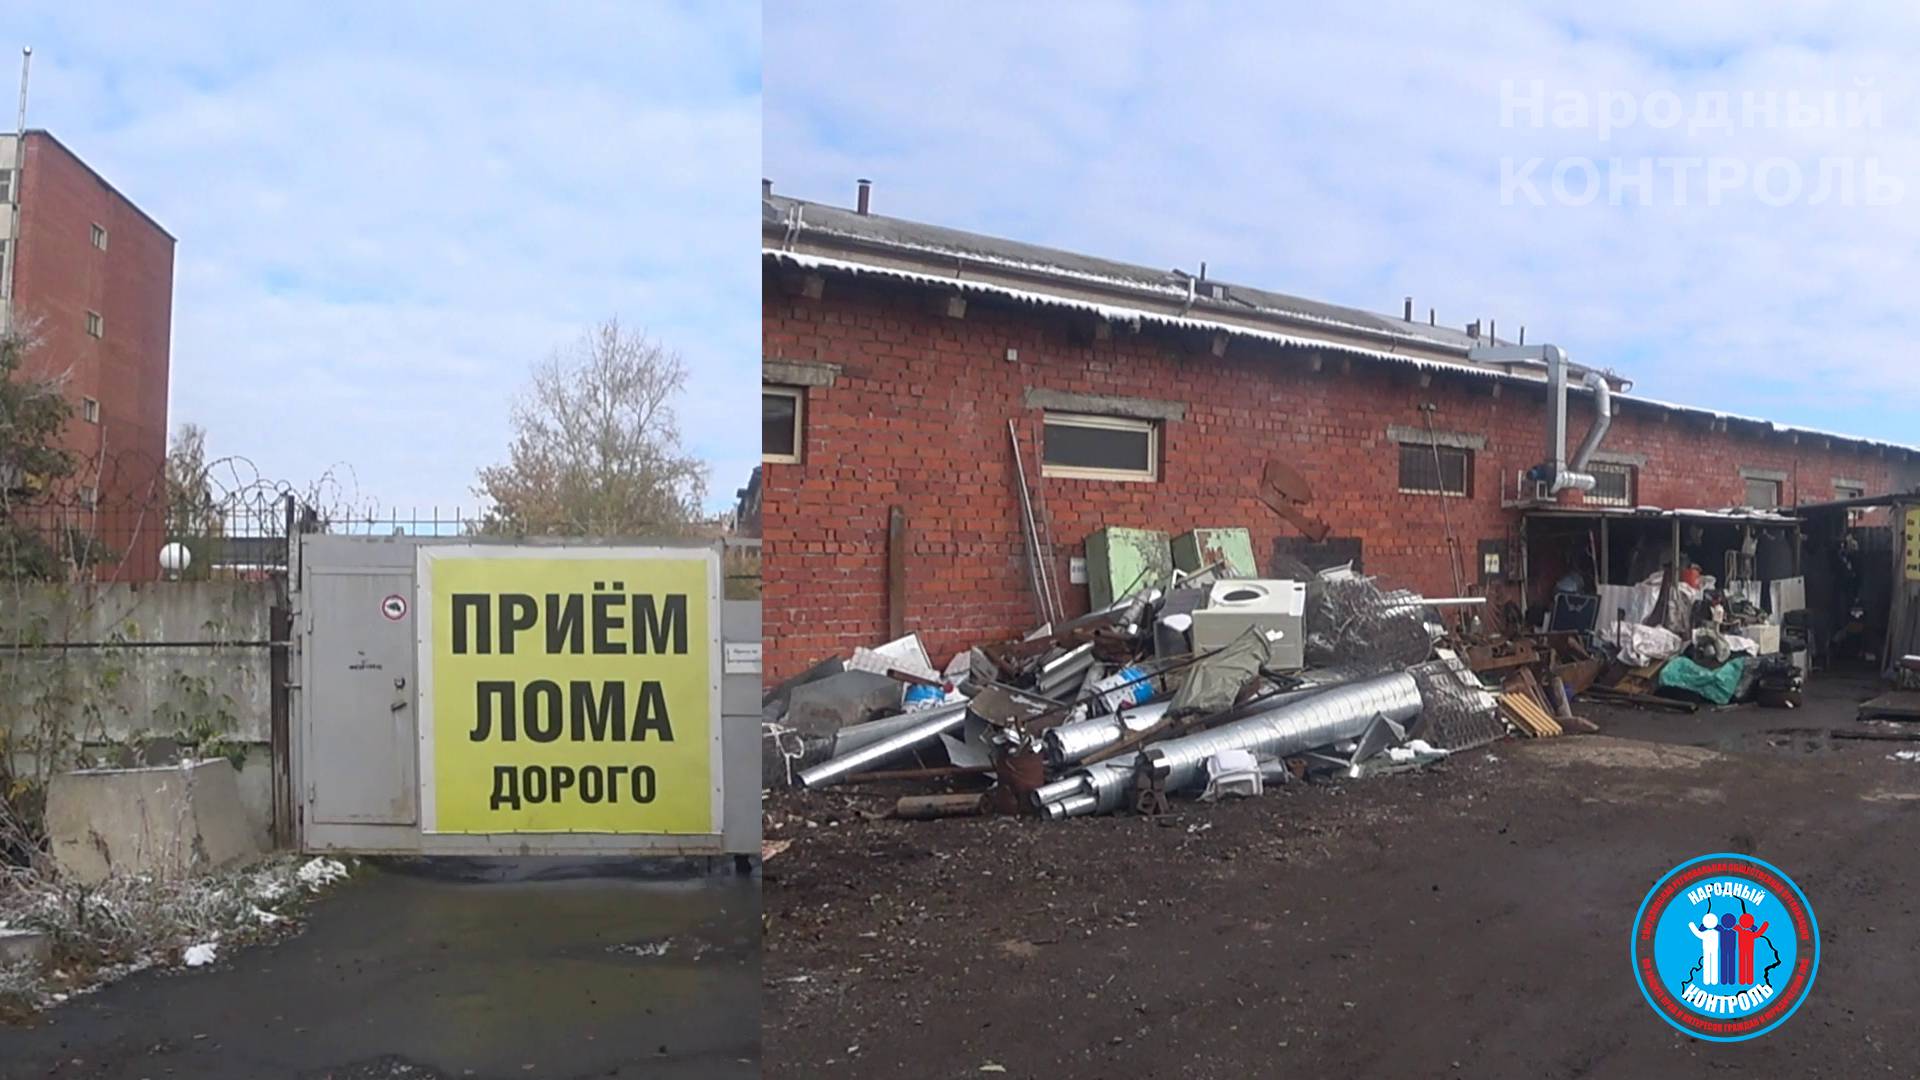 Незаконная приемка металла, легализация краденного на Черняховского, 55 в Екатеринбурге